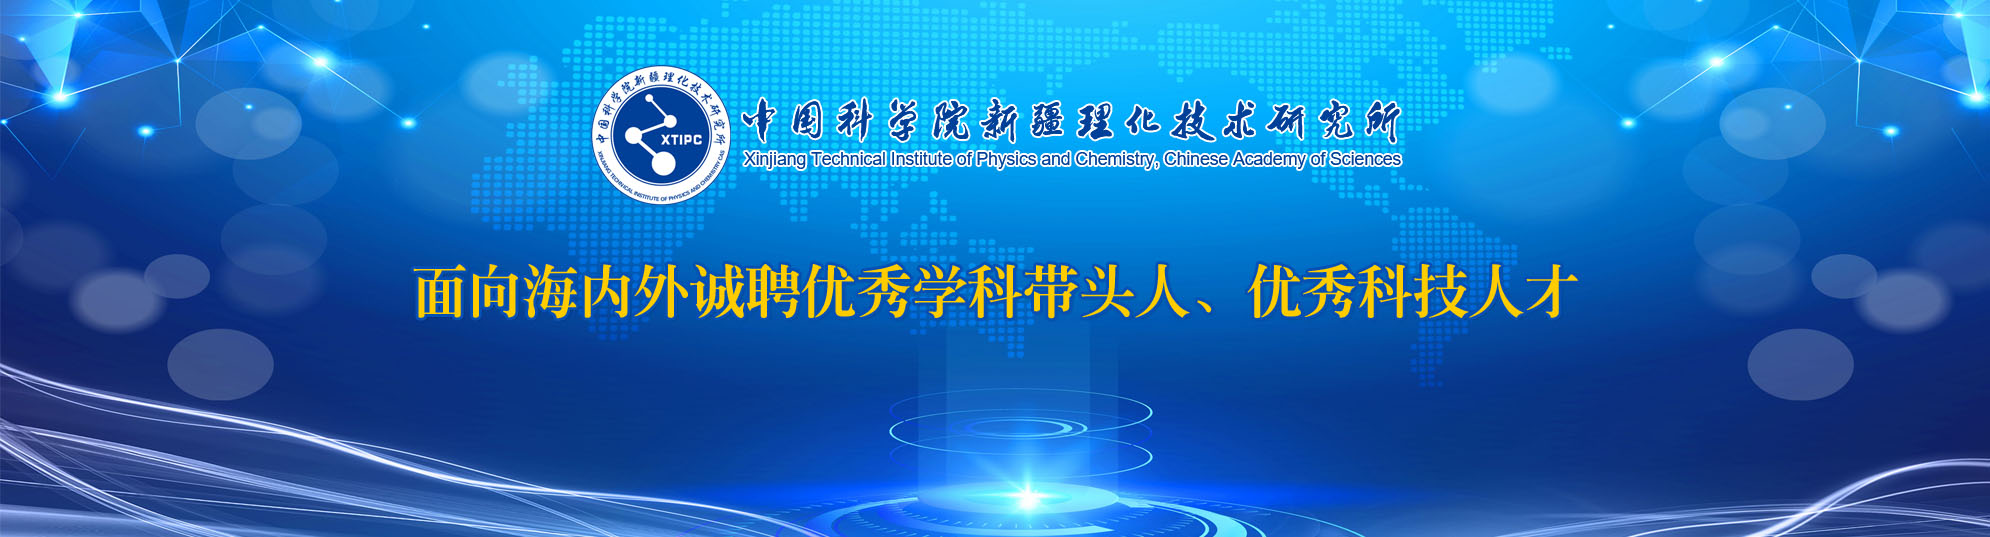 中國科學院新疆理化技術研究所2021年人才招聘啟事